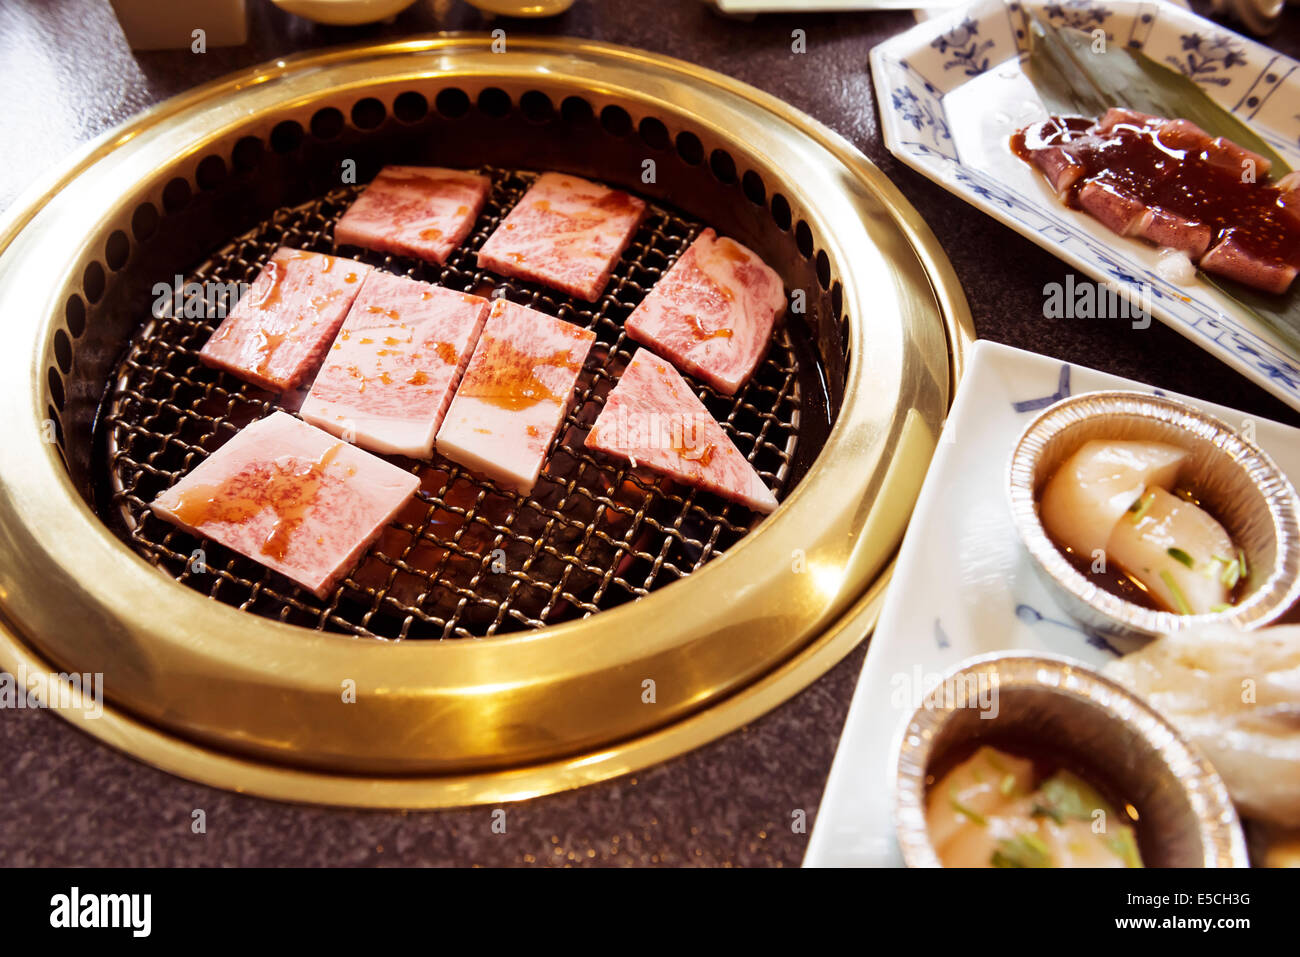 De boeuf cuit sur un gril cuisinière dans un restaurant japonais. Yakiniku, barbecue japonais. Banque D'Images